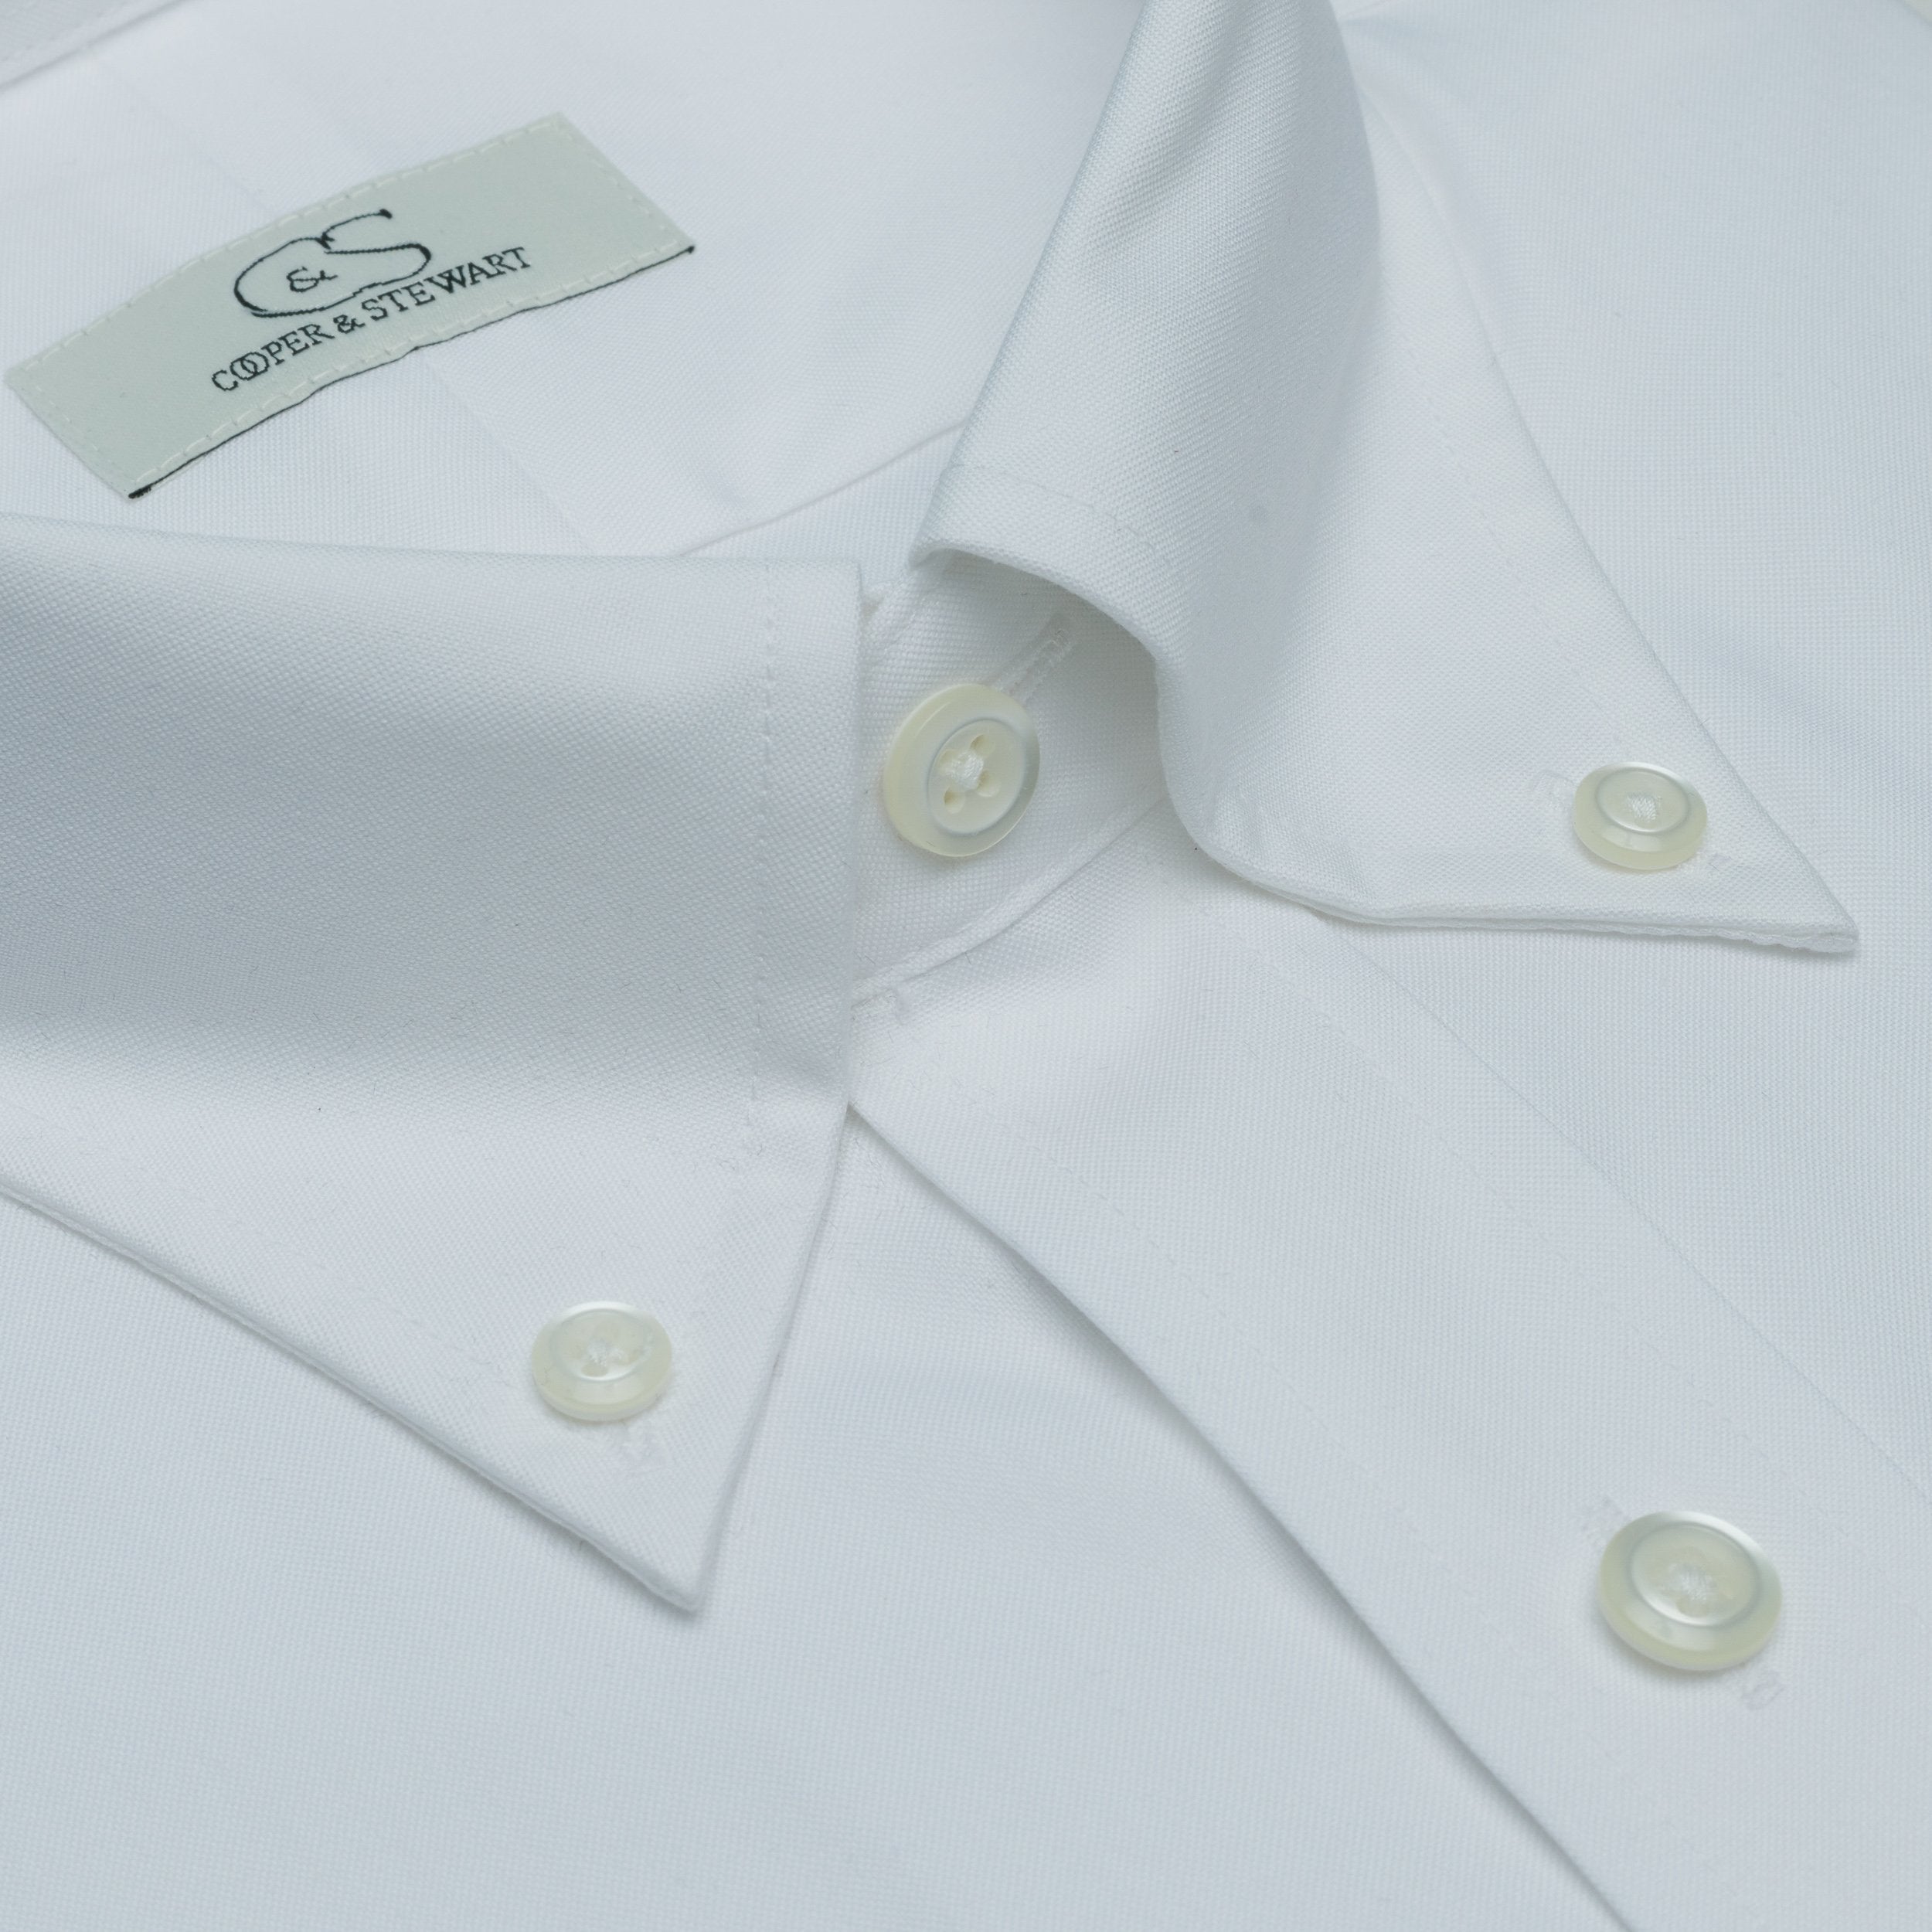 001 - White BD Dress Shirt Best Dress Shirt 